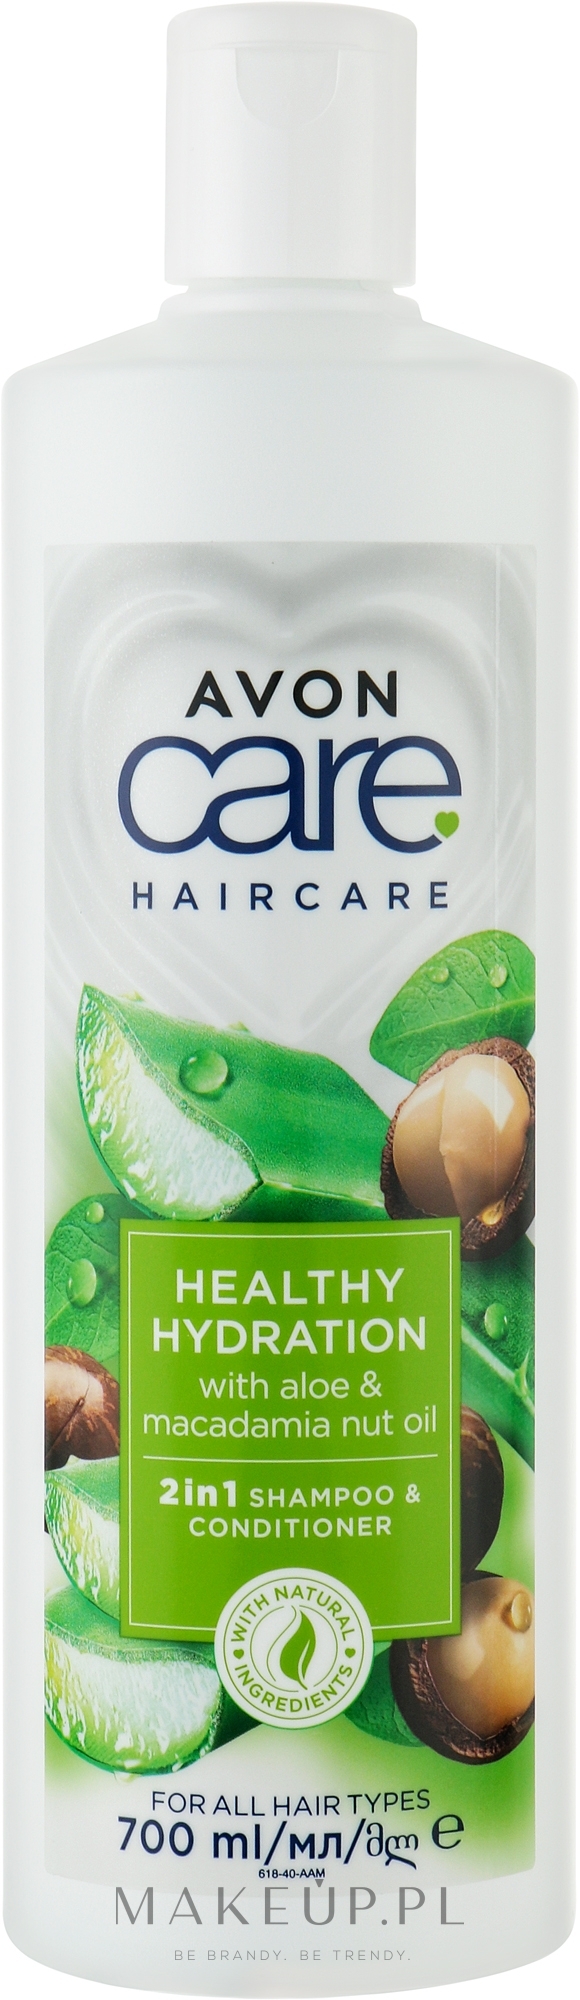 Szampon do włosów 2 w 1 z aloesem i orzechami makadamia - Avon Care Healthy Hydration 2 In 1 Shampoo & Conditioner  — Zdjęcie 700 ml